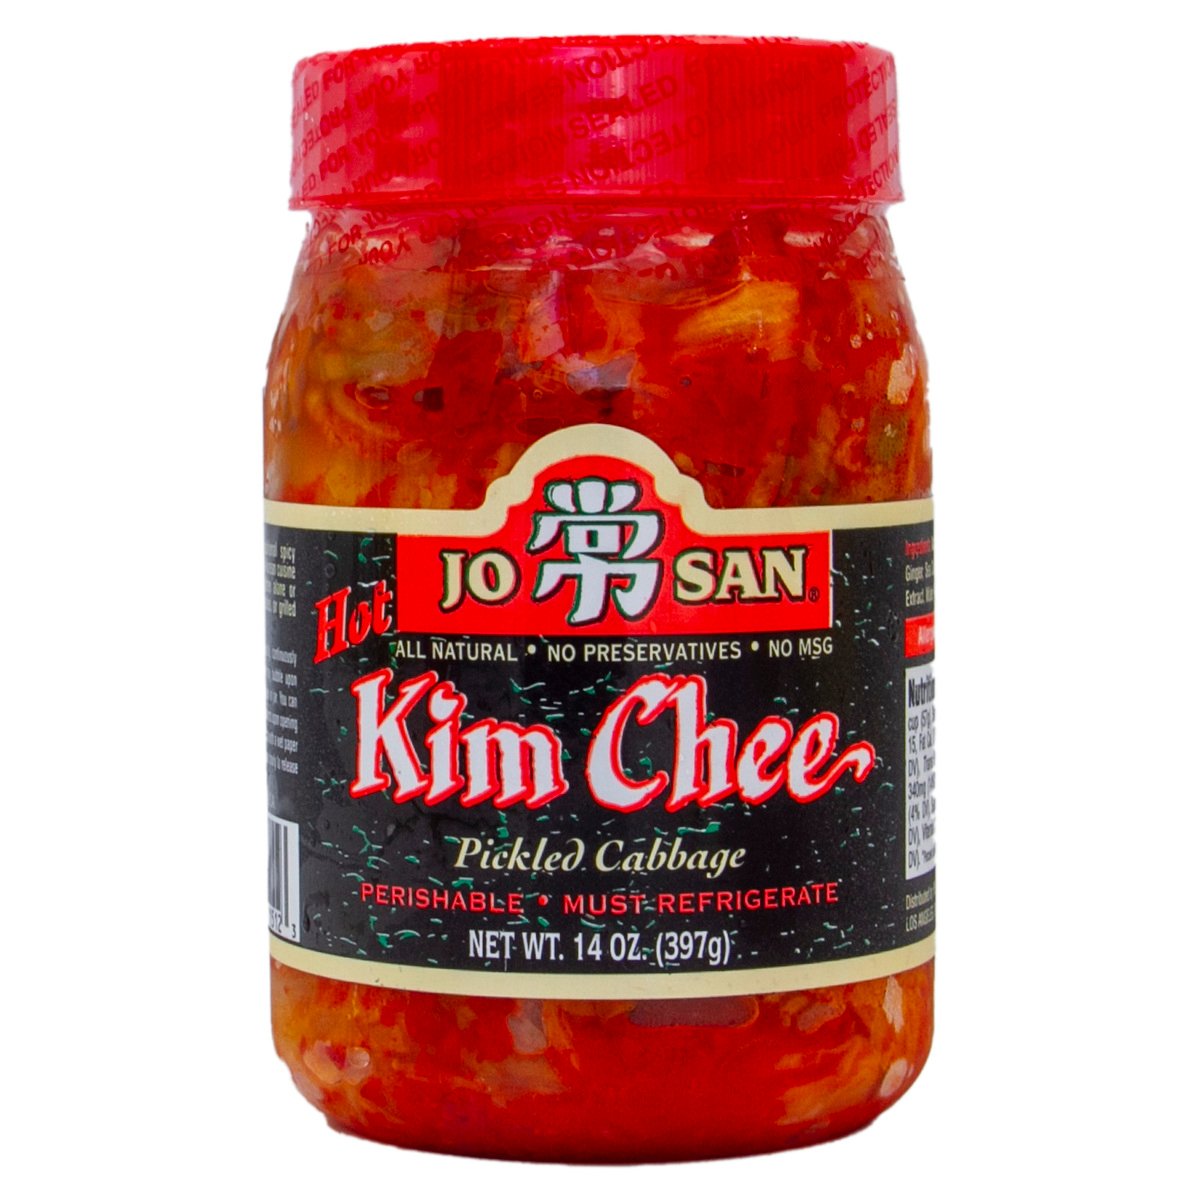 Melissa Josan Kim Chee Cabbage Pickled 397 g